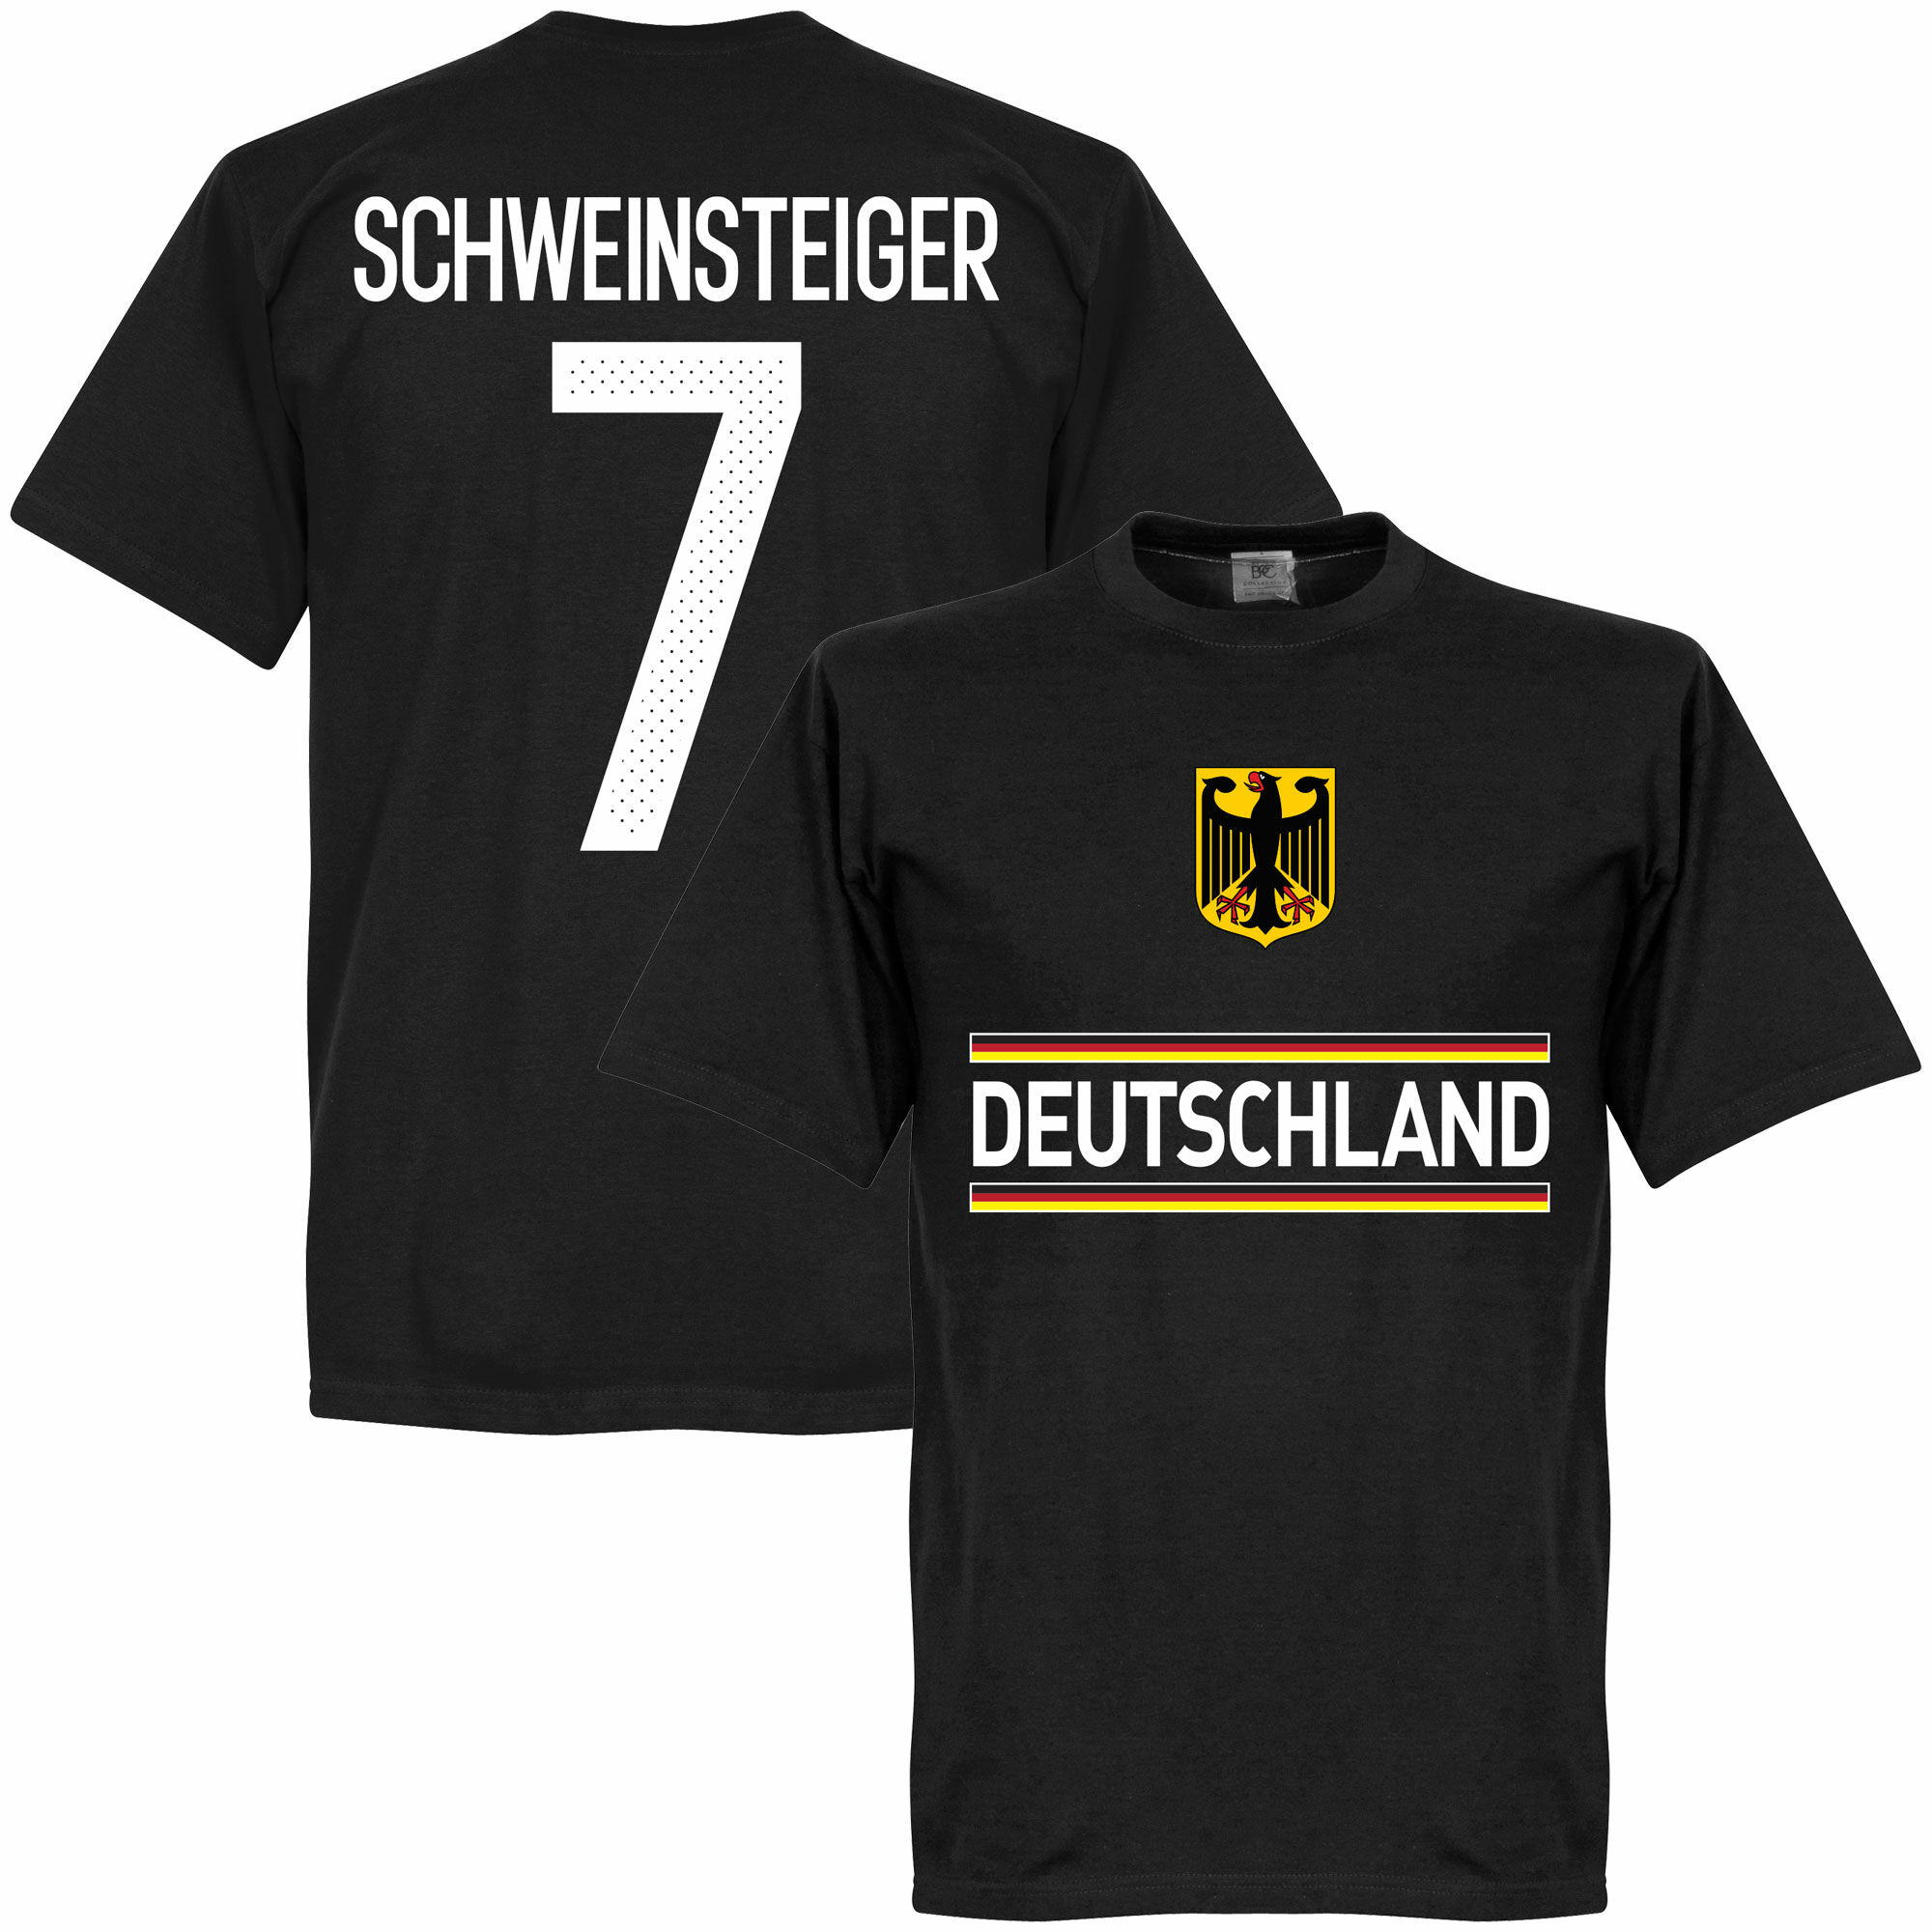 Německo - Tričko - Bastian Schweinsteiger, číslo 7, černé